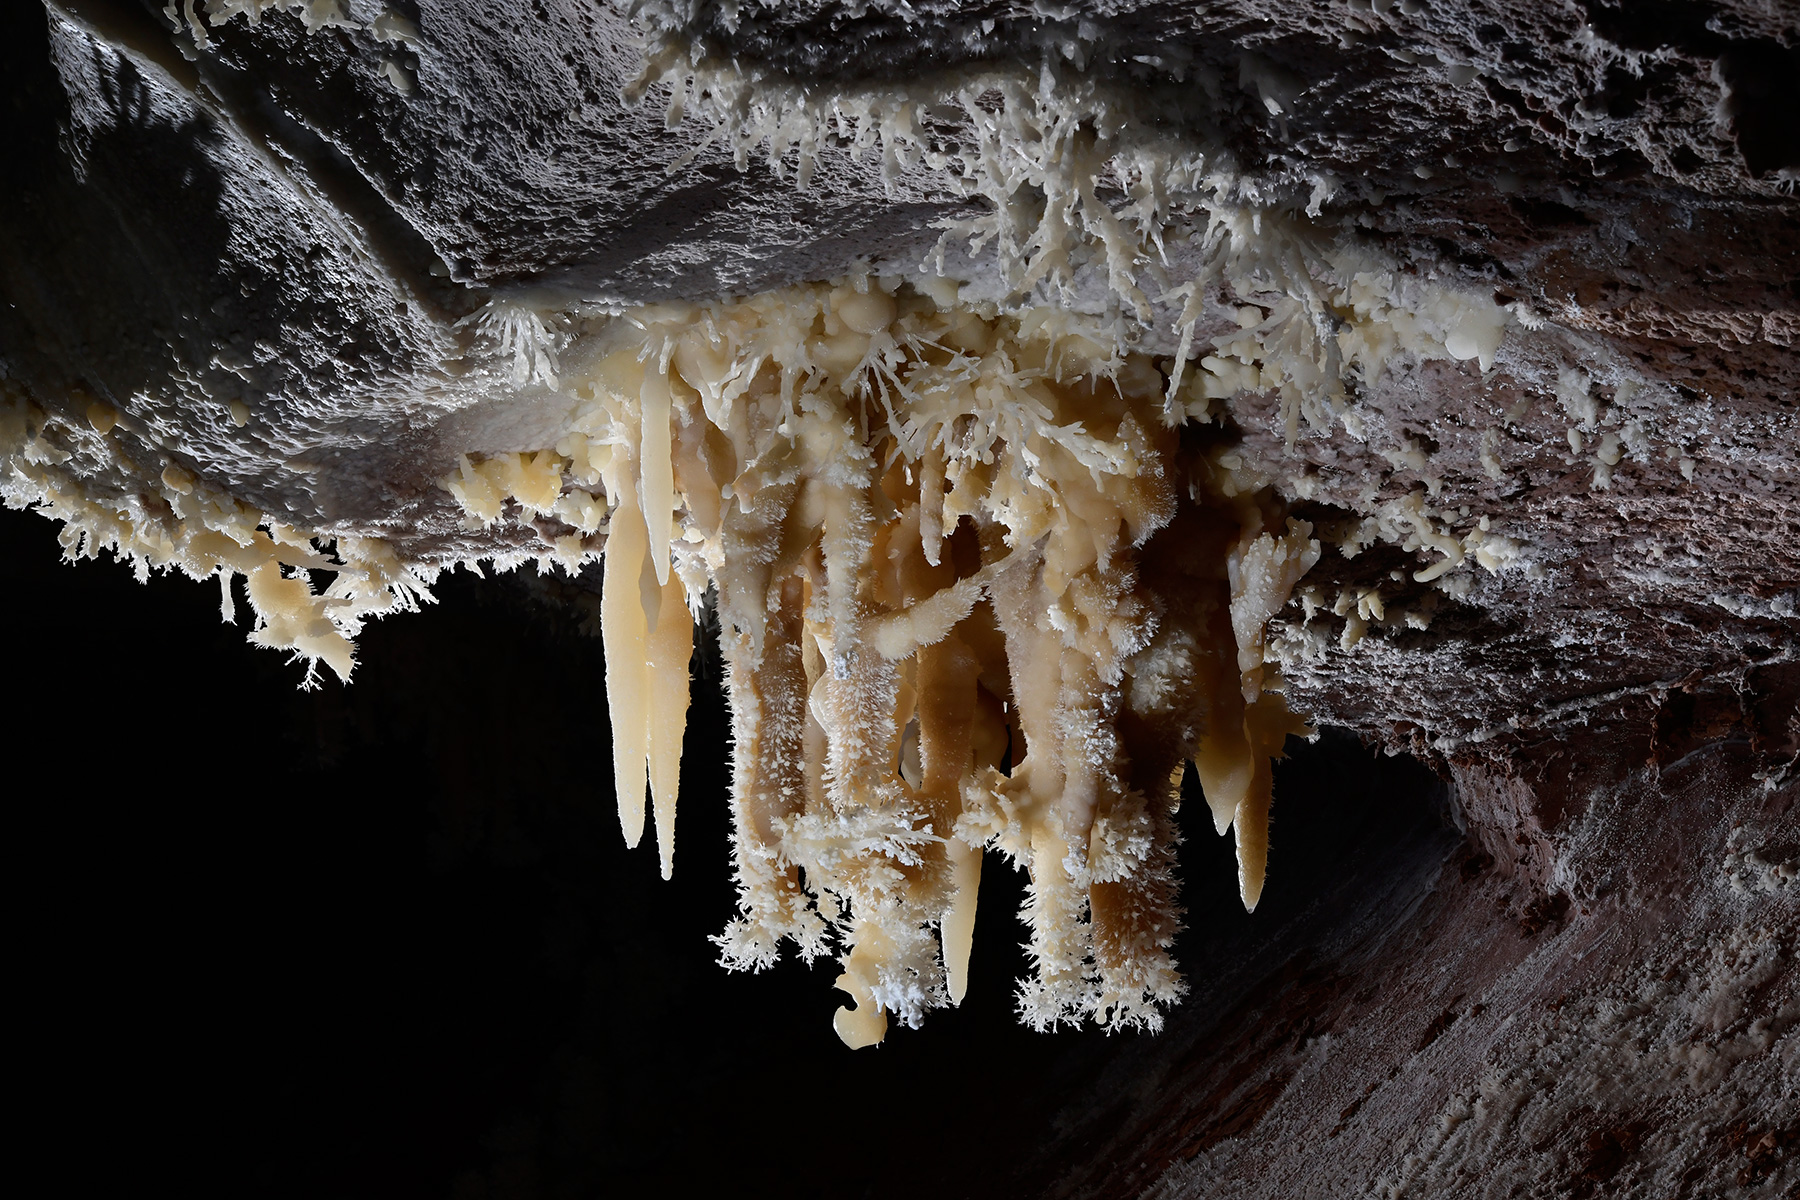 Cave of the Winds (USA - Colorado) - Ensemble de stalactites avec des excentriques d'aragonite au plafond